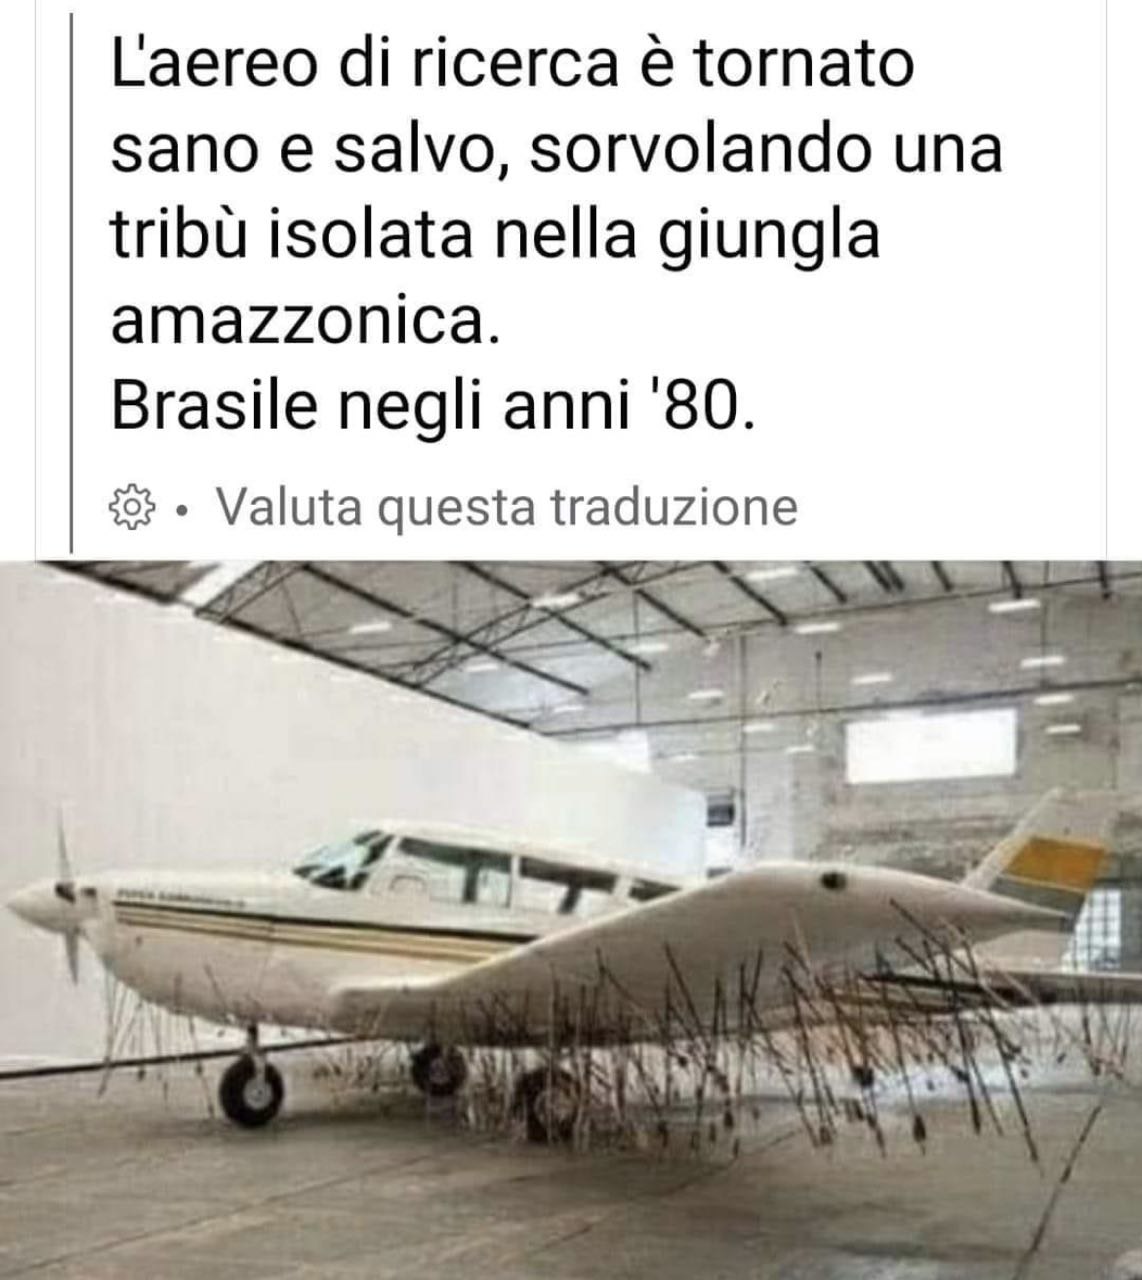 Амазонки сбили самолет из лука в 1980-х